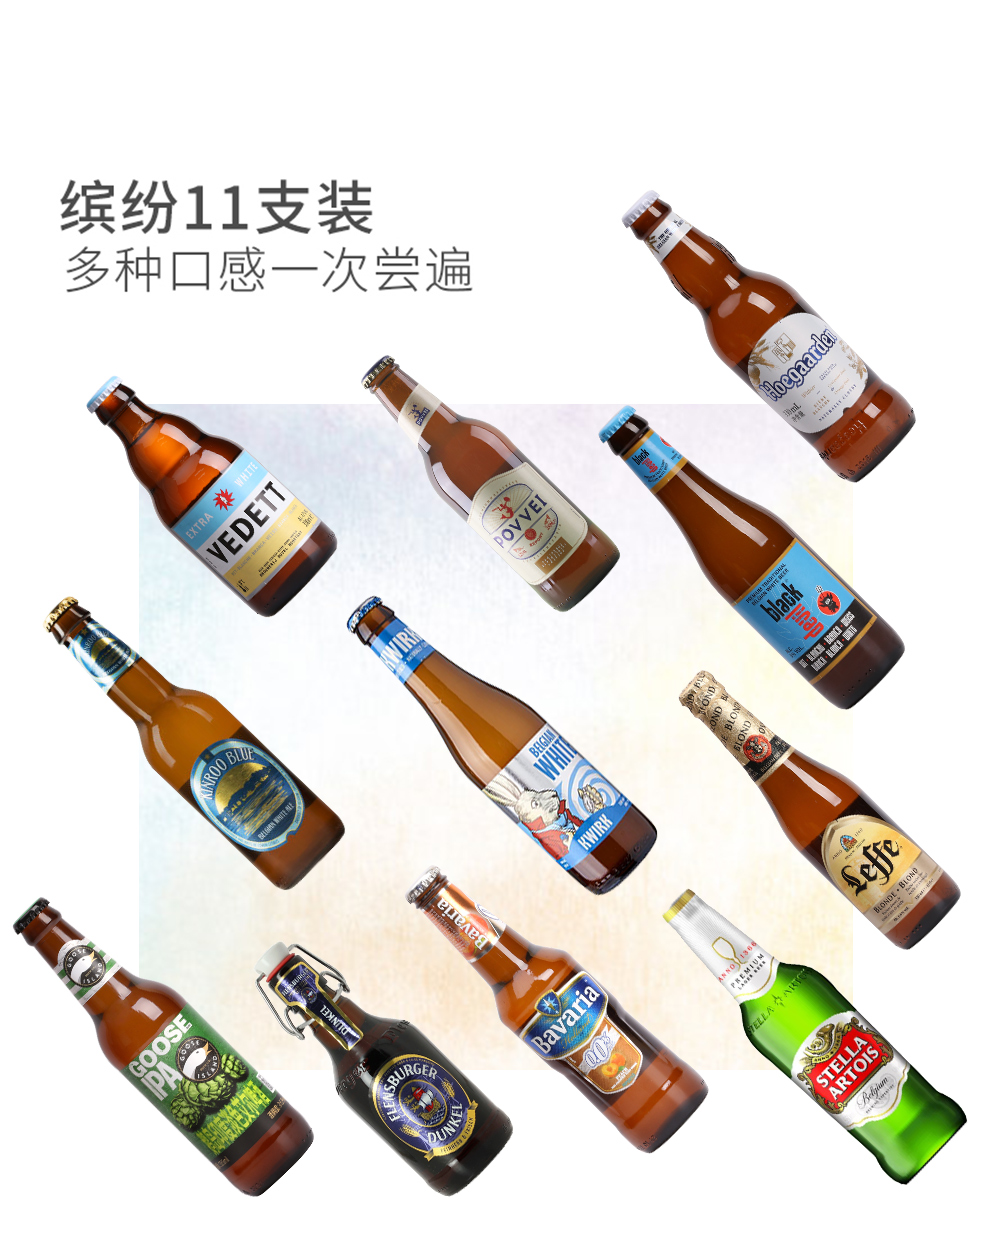 【双旦特供】多国啤酒品鉴会免费试用,评测